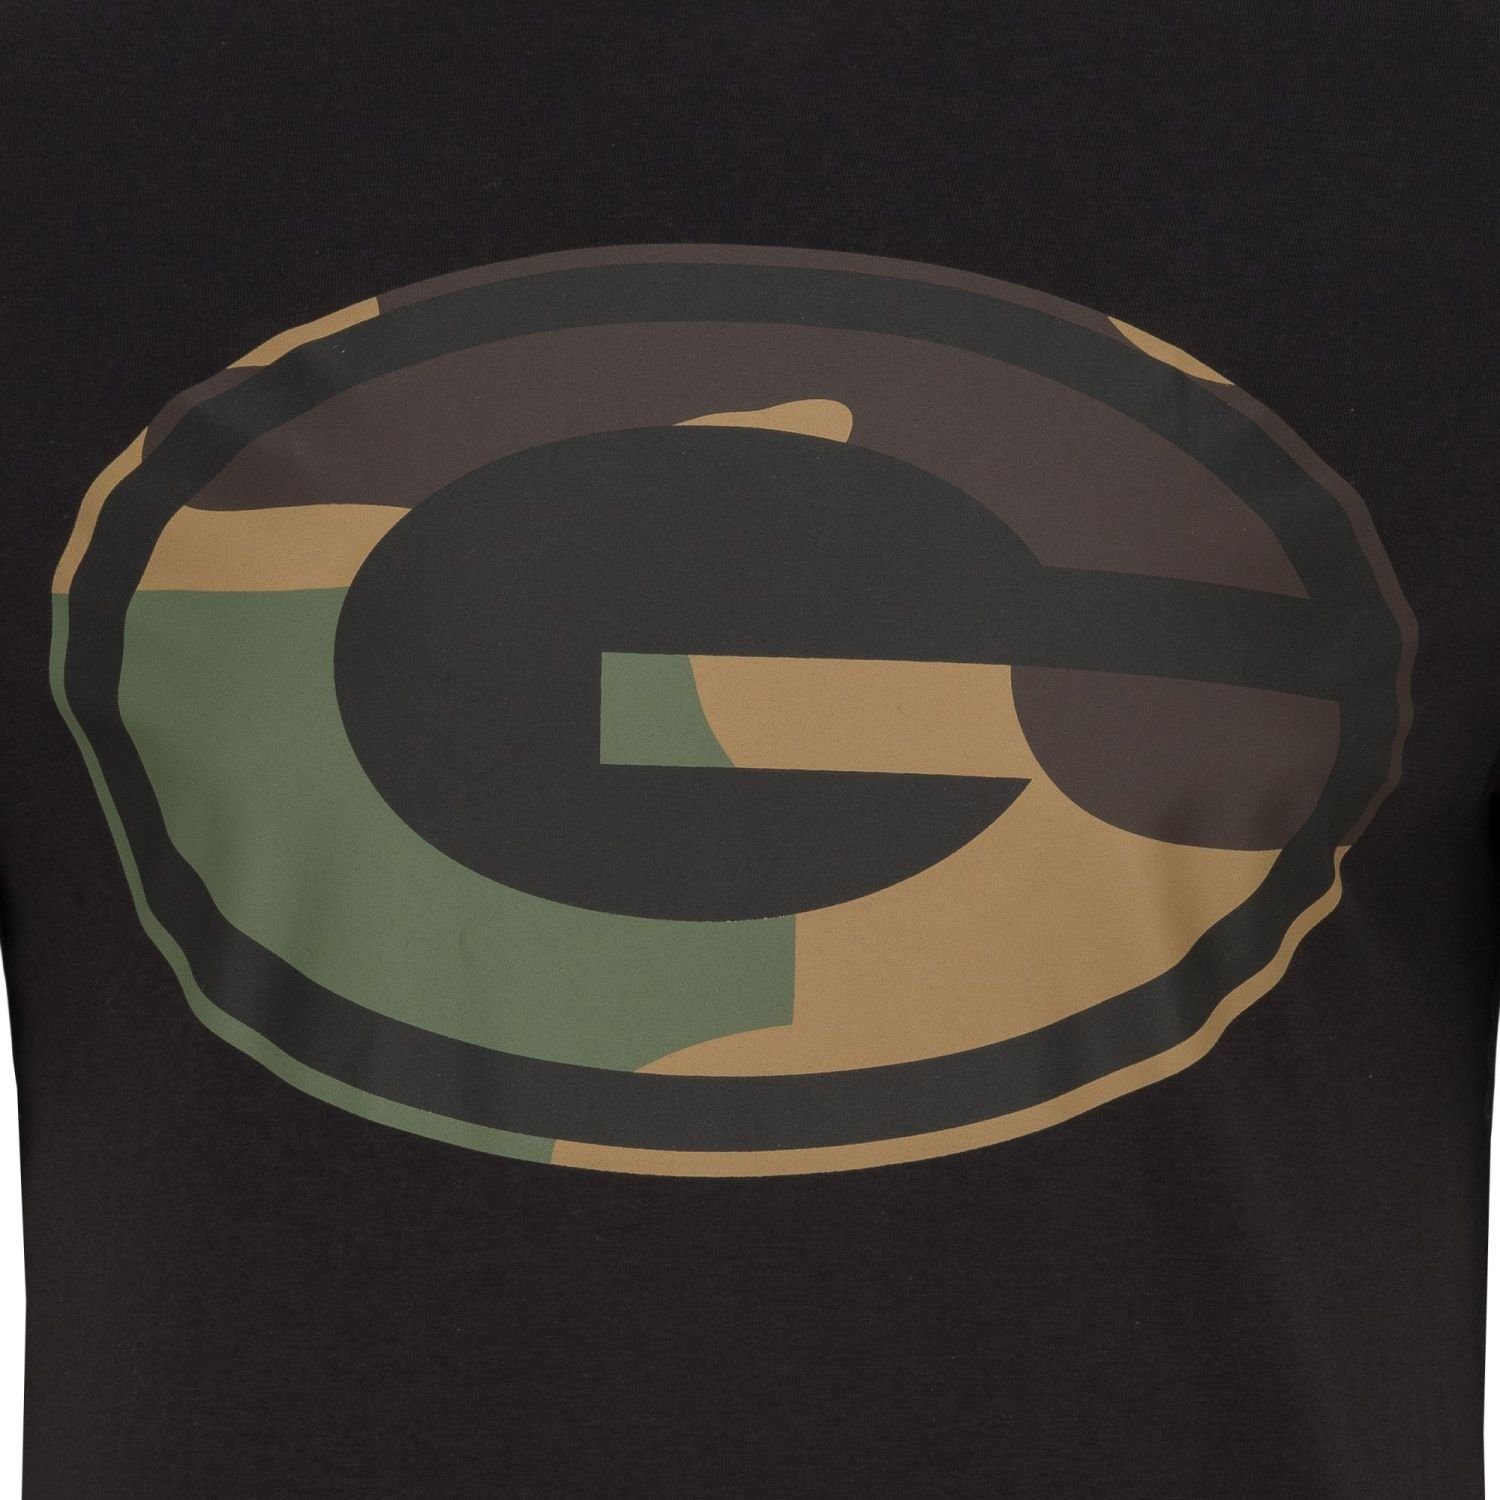 New Era Print-Shirt Football NFL 2.0 Green Bay Teams Packers